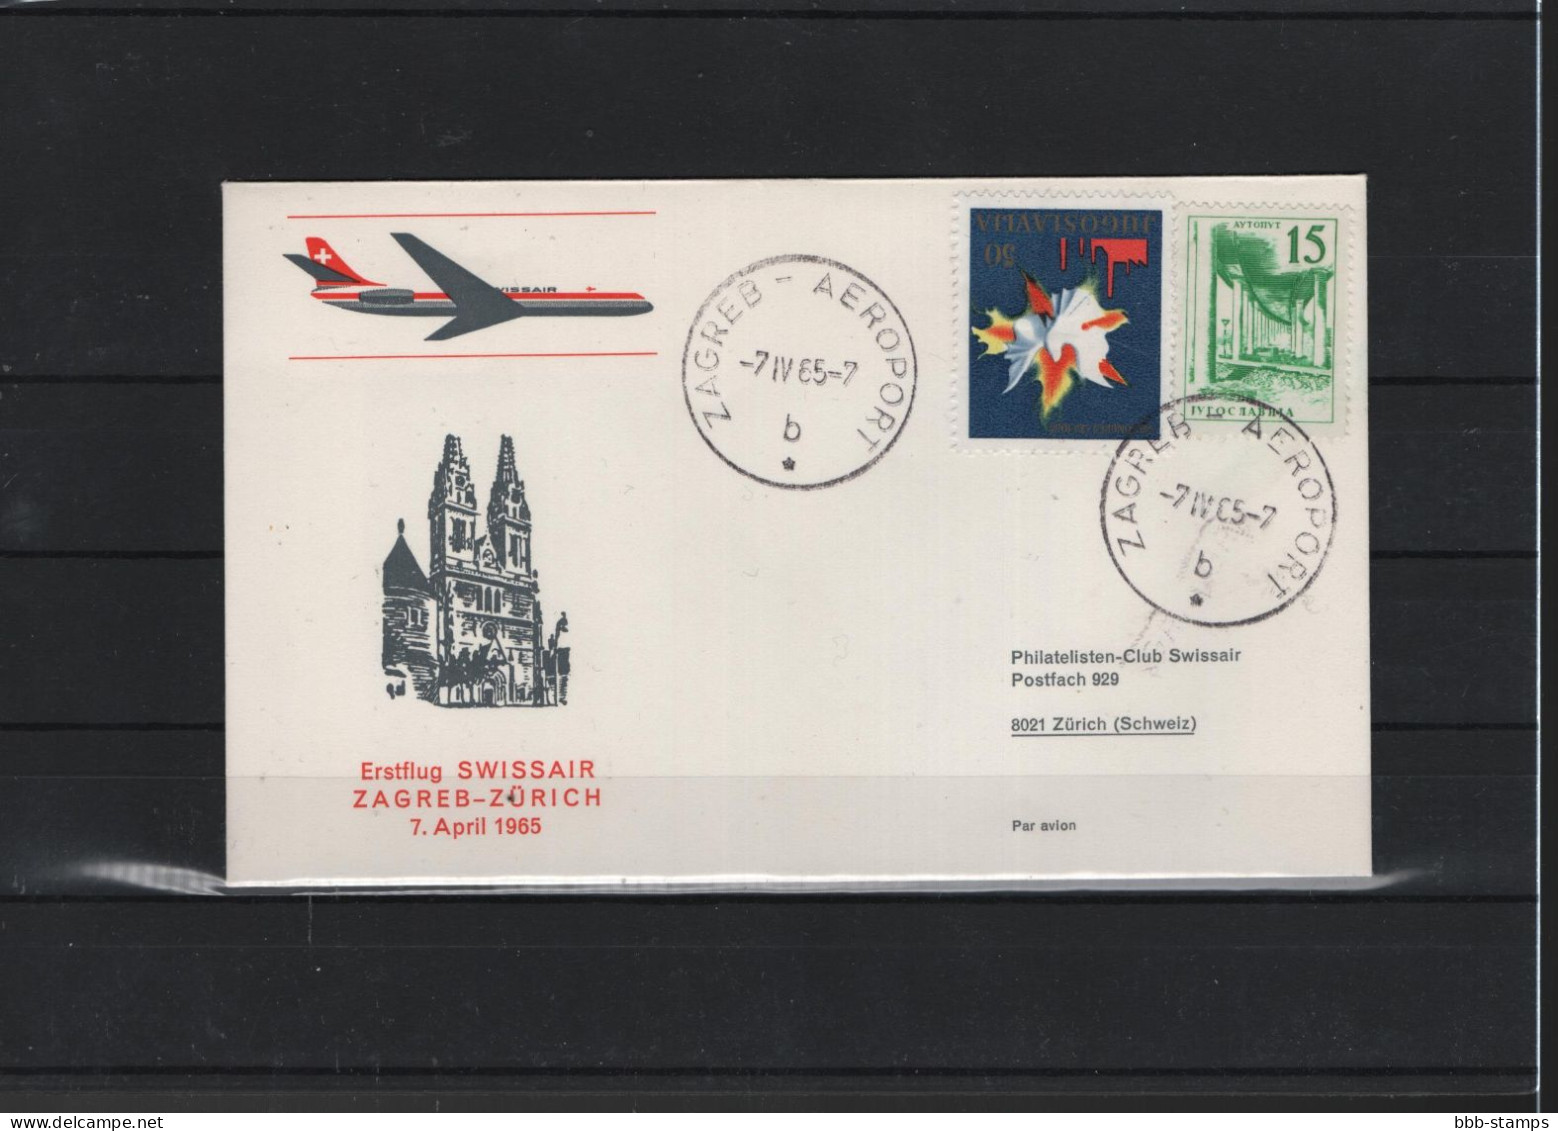 Schweiz Air Mail Swissair  FFC  7.4.1965 Zagred - Zürich - Premiers Vols